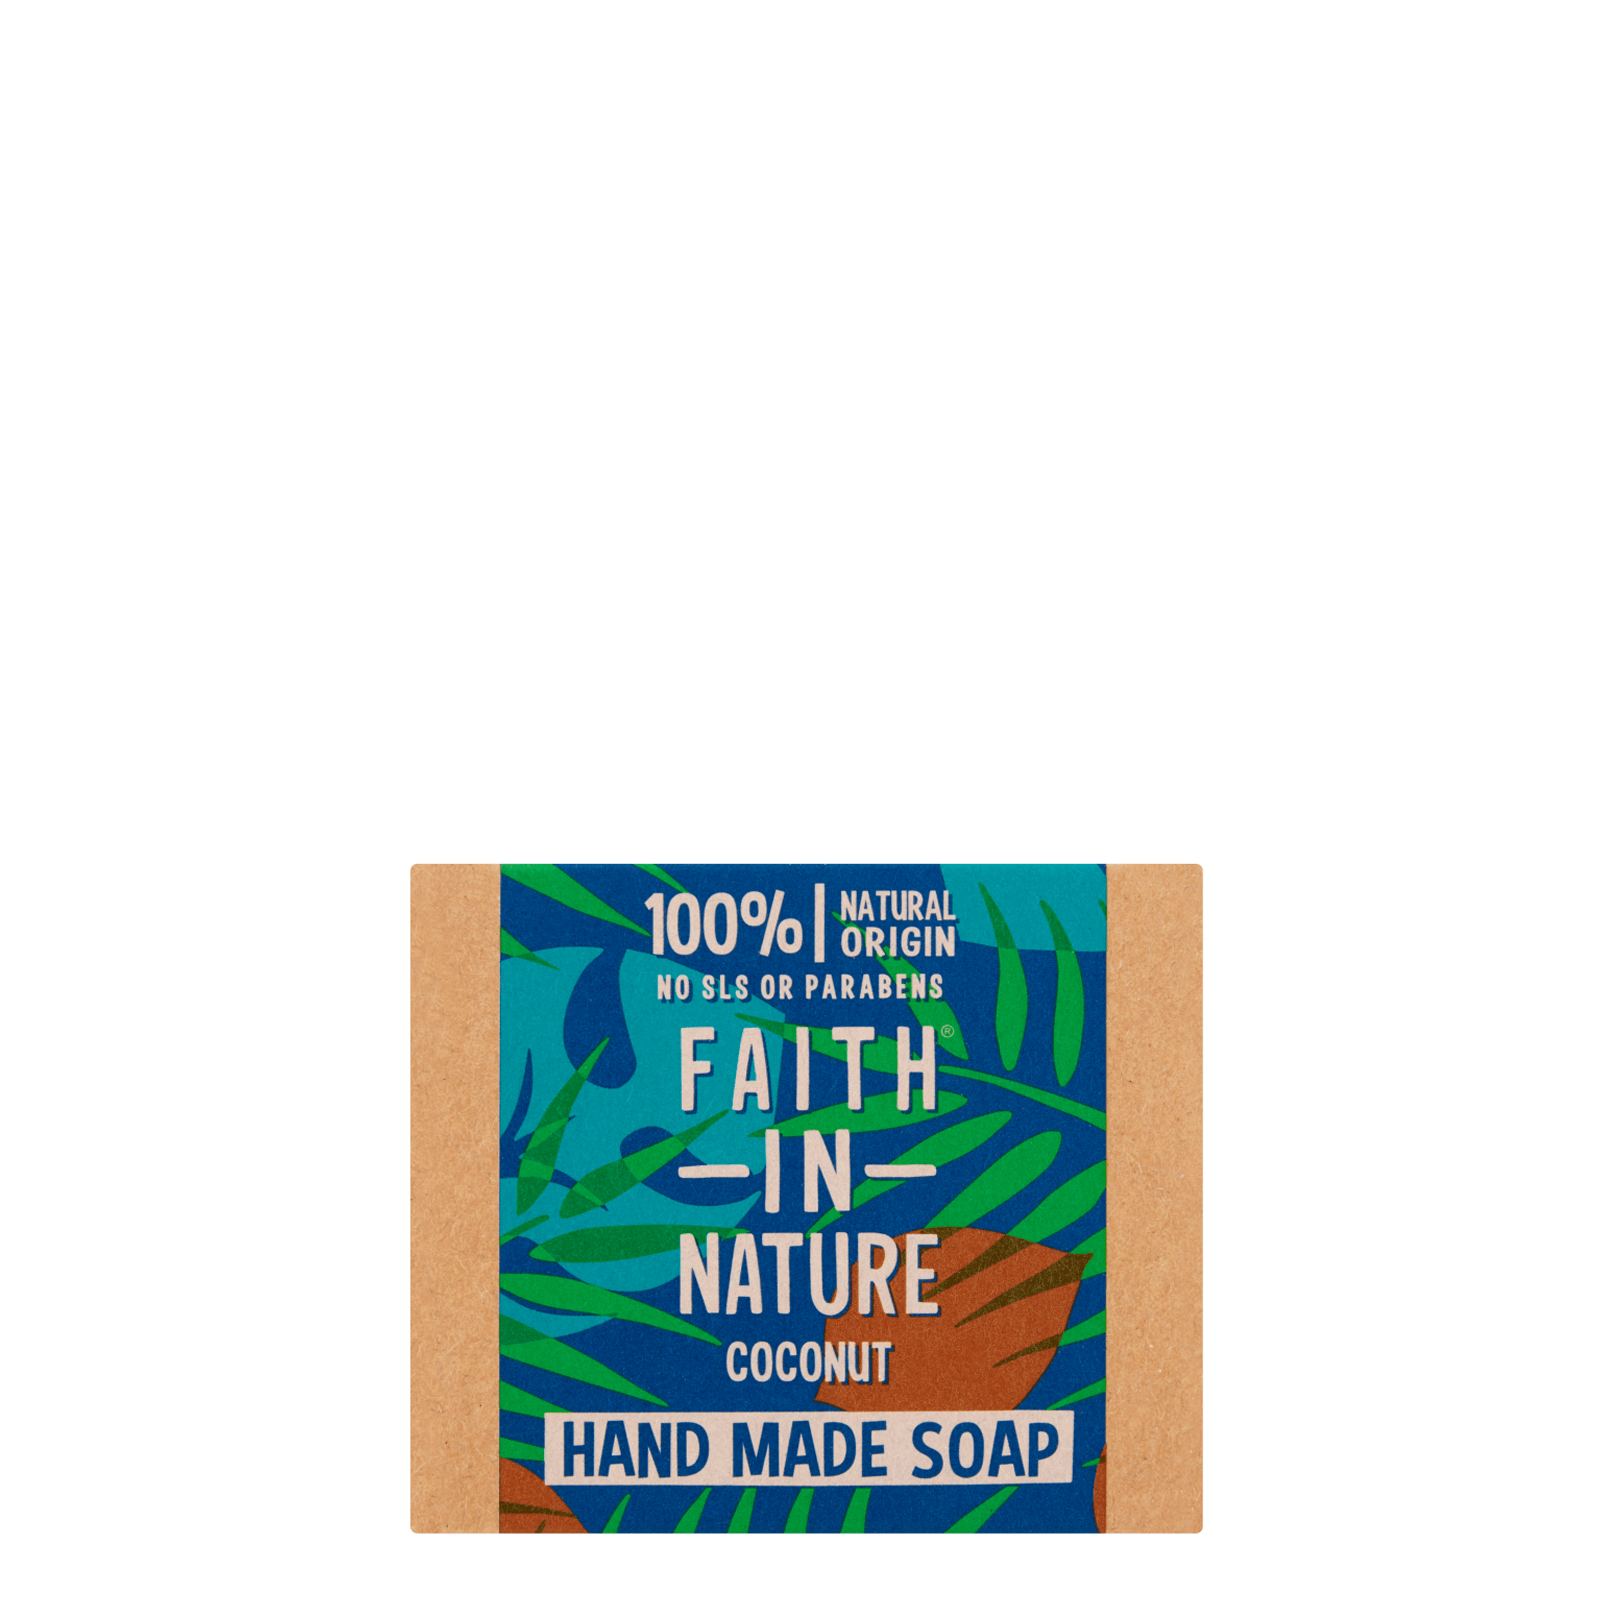 Faith In Nature Coconut Soap Bar 100g